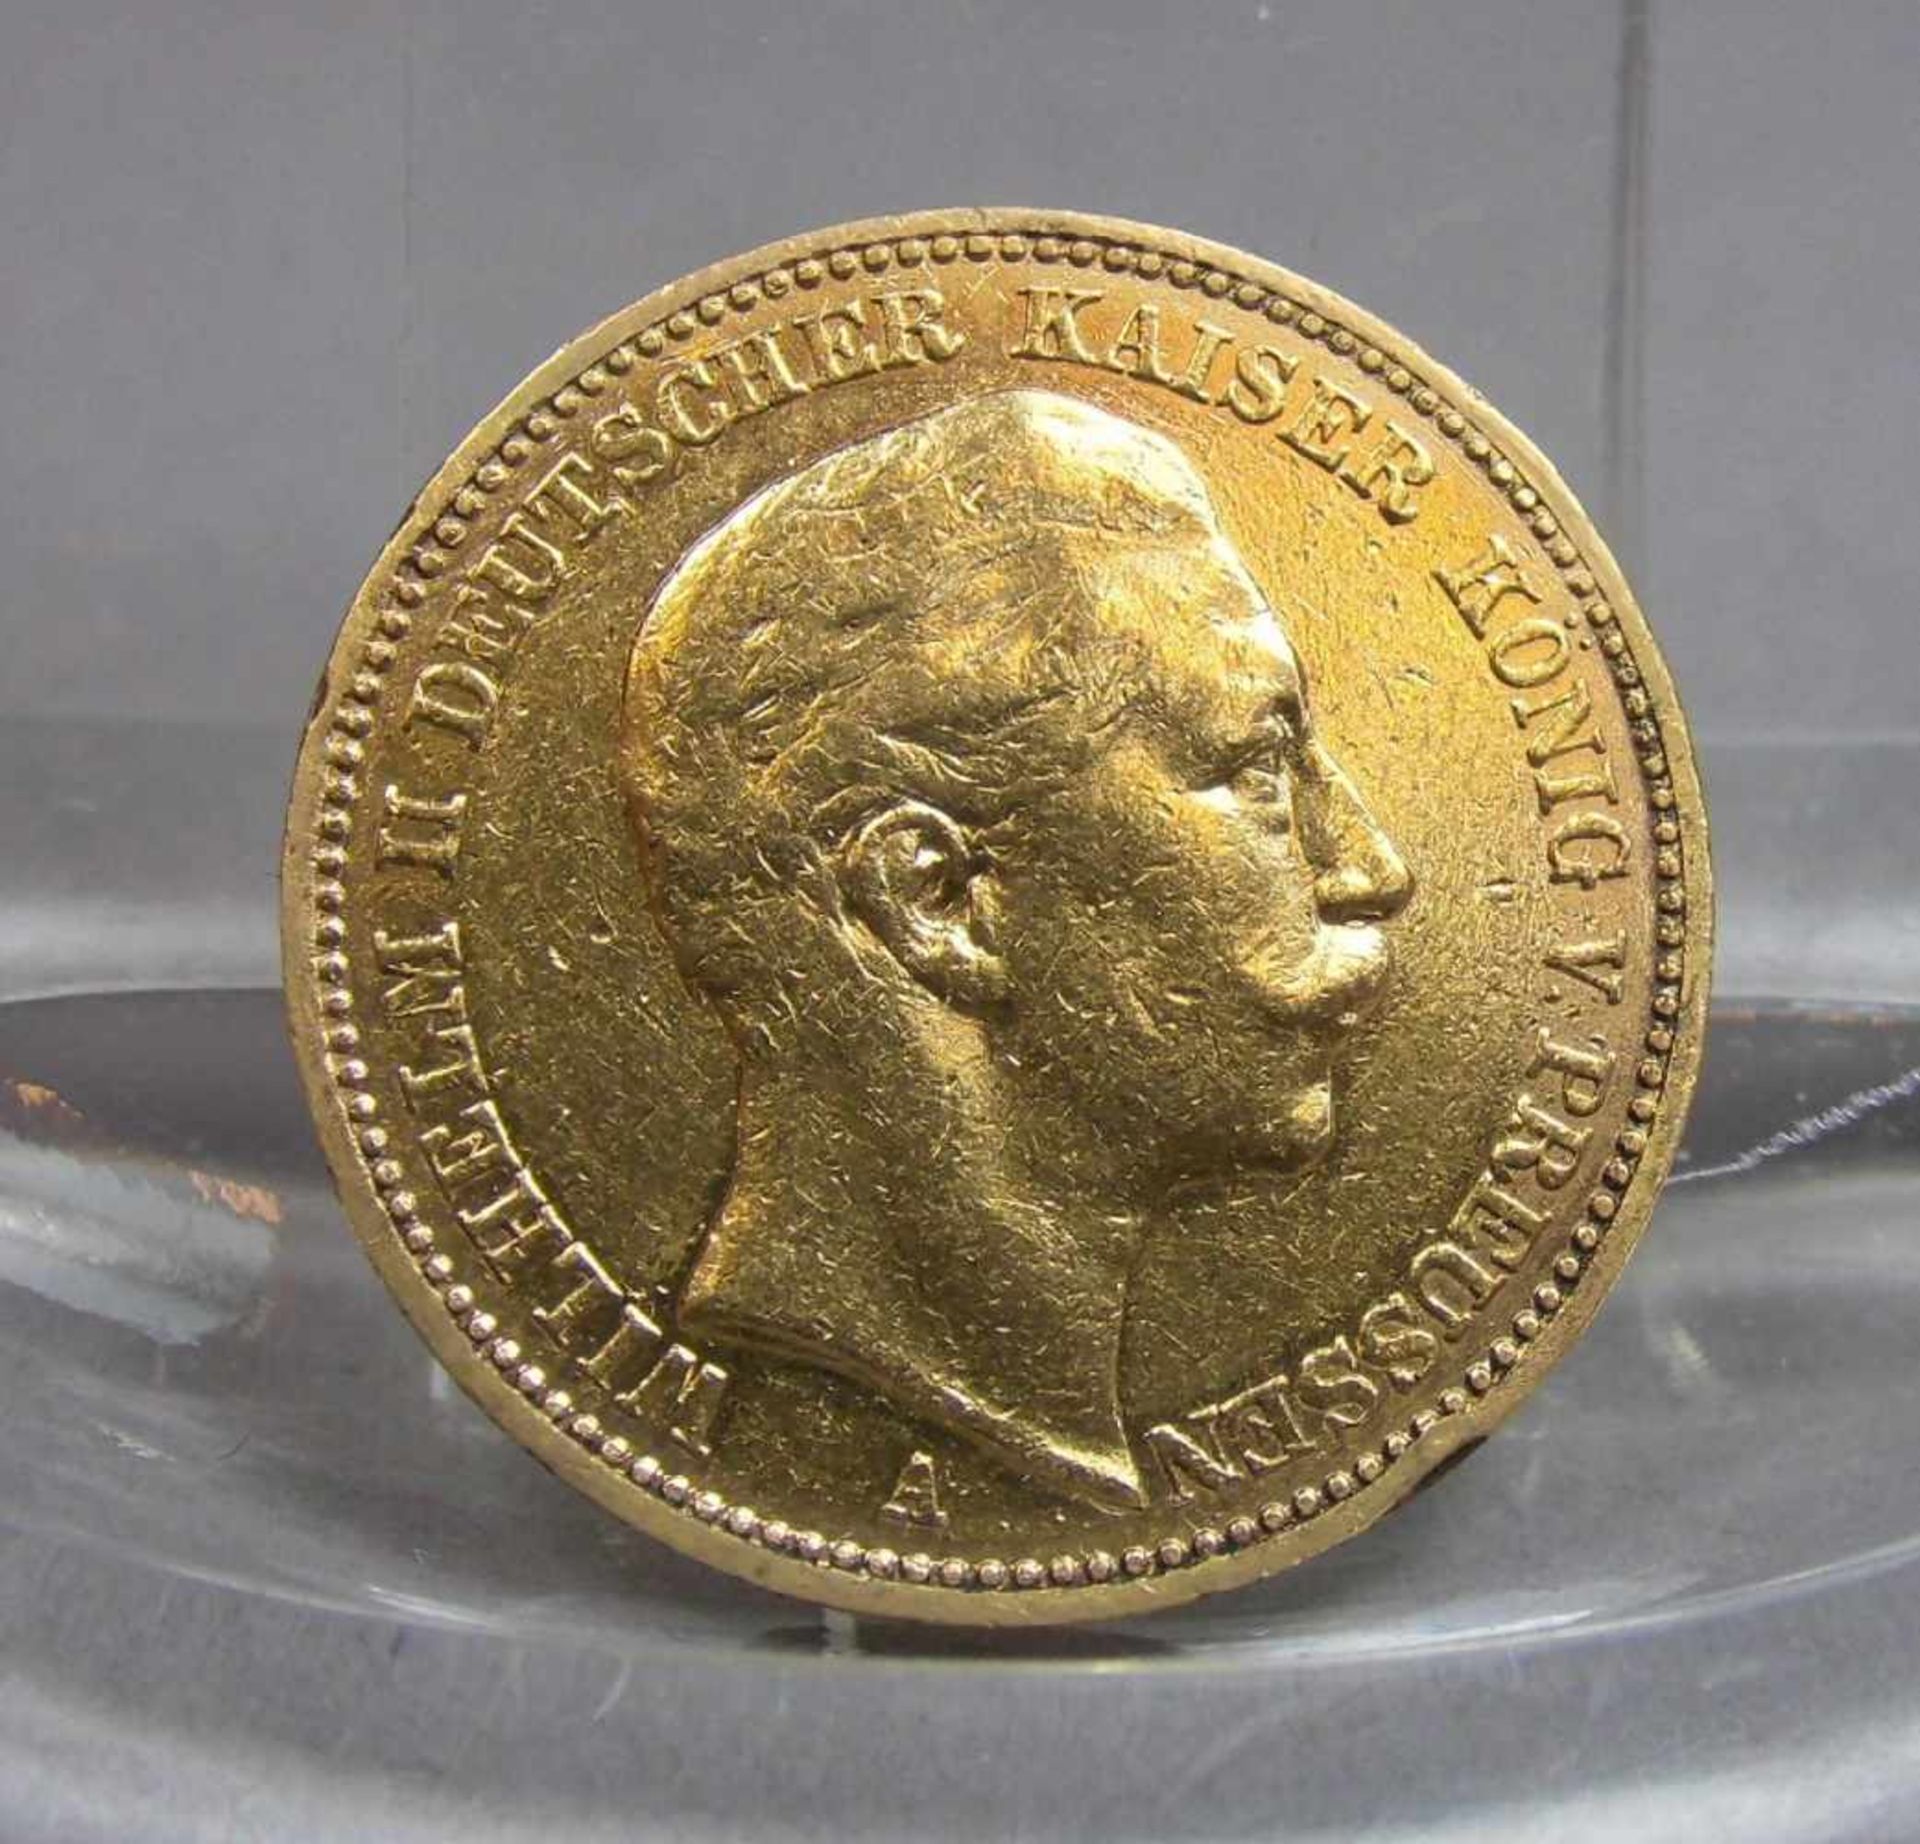 GOLDMÜNZE: DEUTSCHES REICH - 20 MARK, 1890, 7,92 Gramm, 900er Gold. Münze bez. "Deutsches Reich 1890 - Bild 2 aus 3